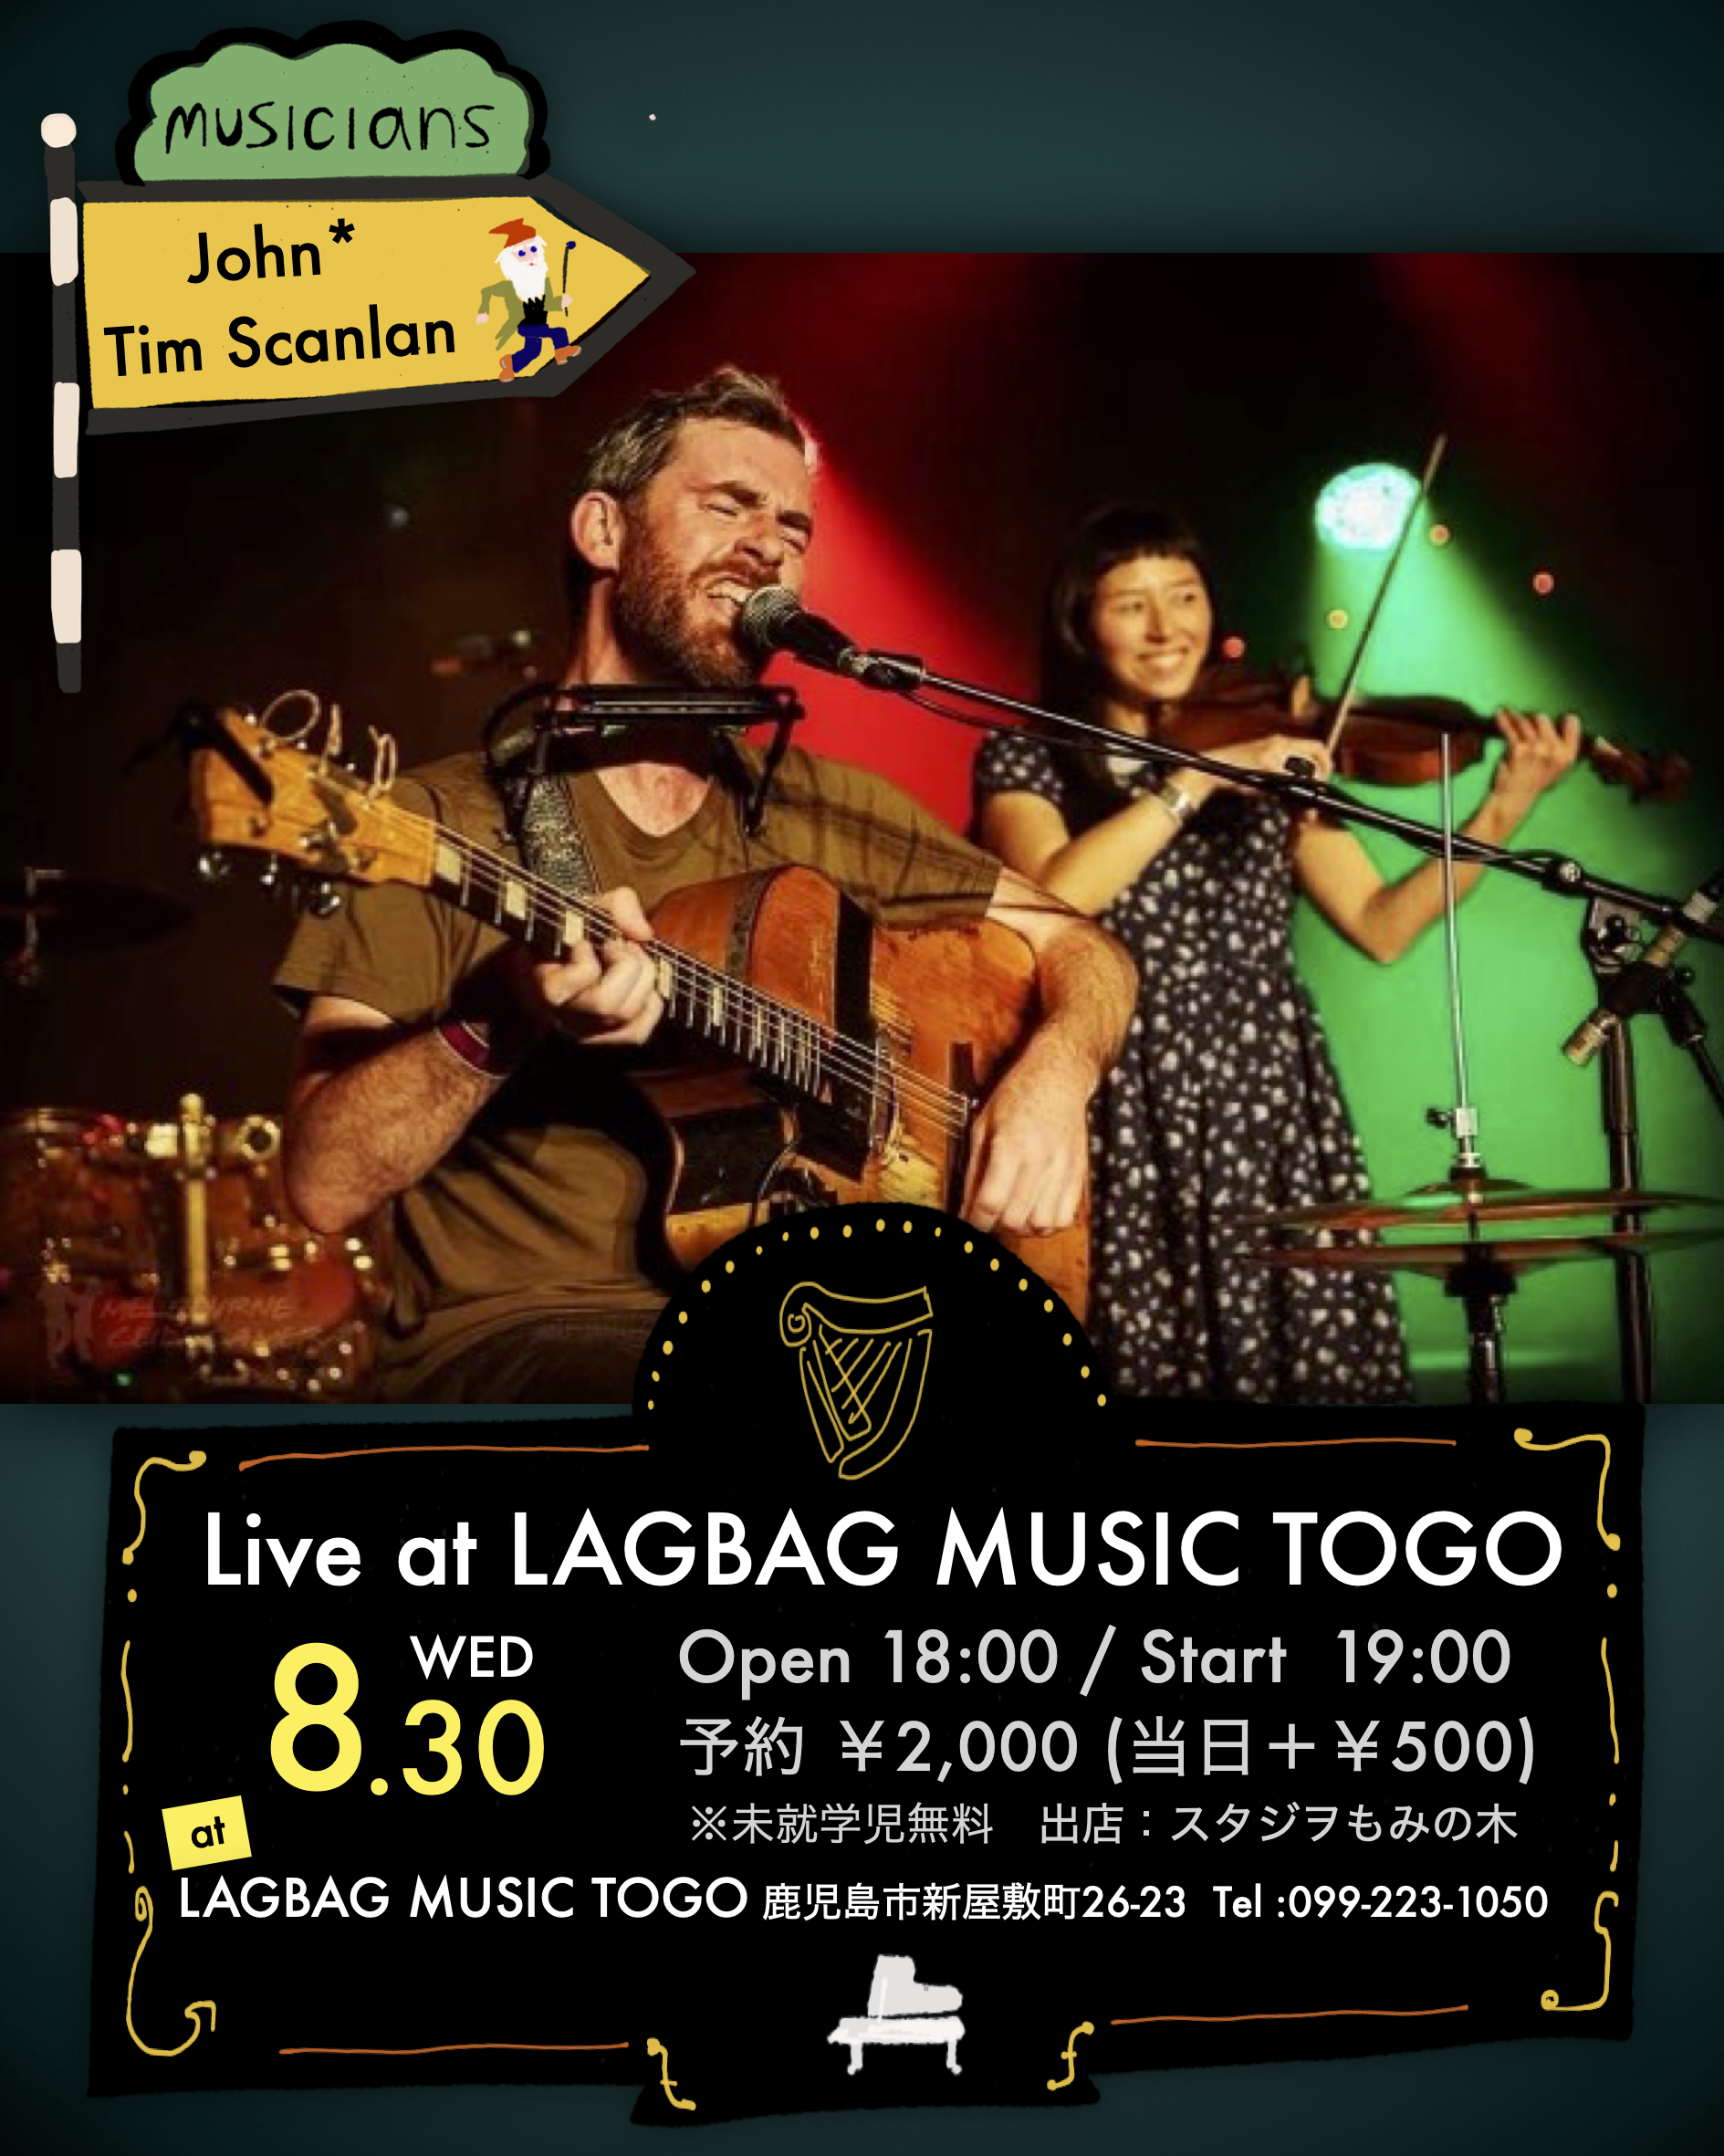 John* & Tim Scanlan Live at LAGBAG MUSIC TOGO